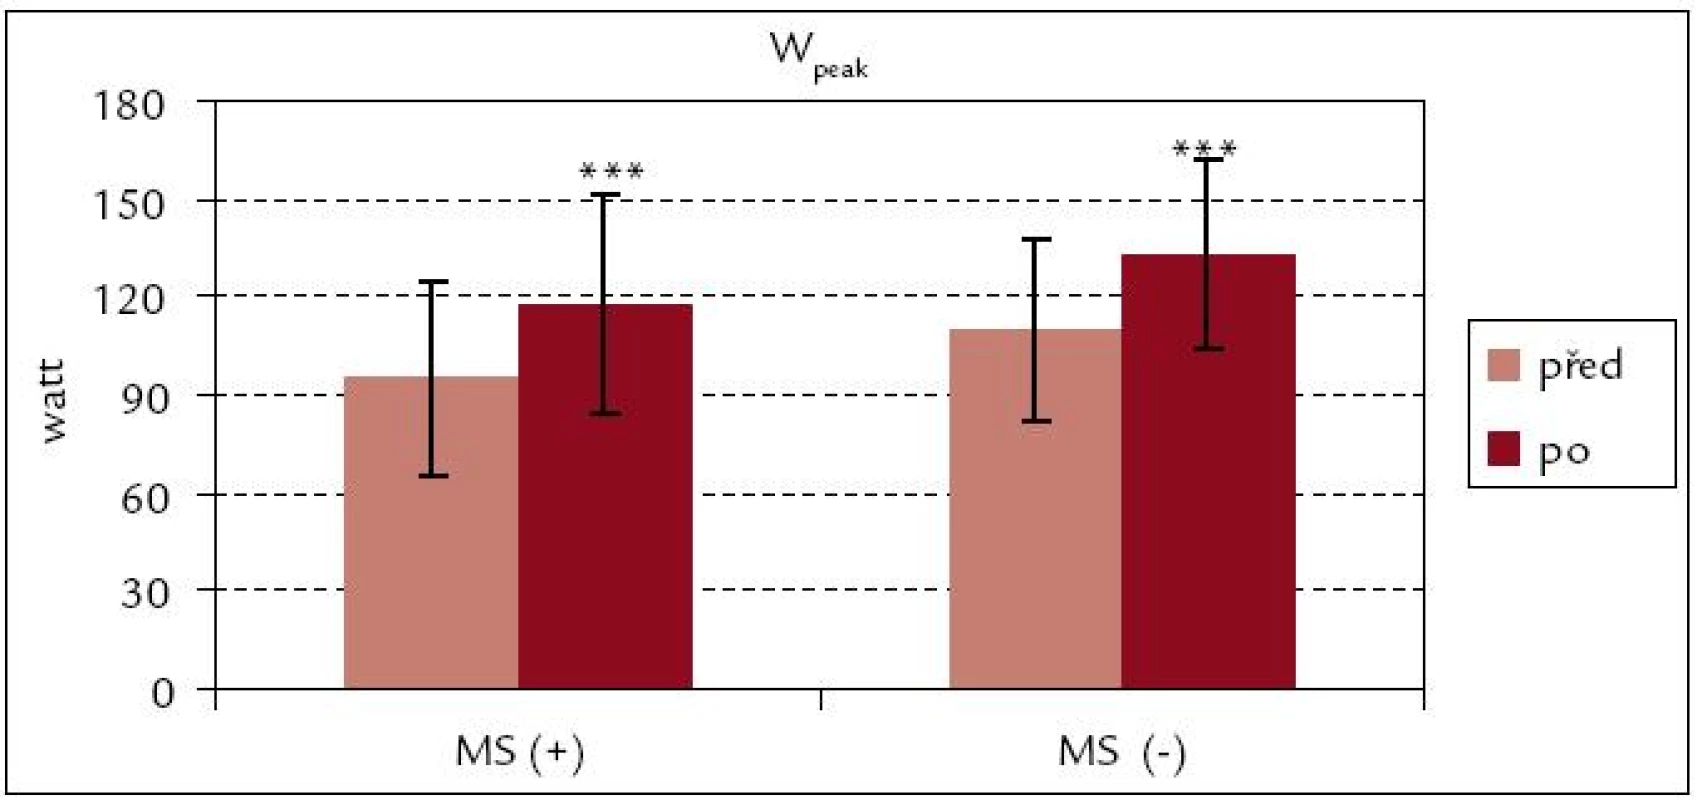 Vrcholový výkon celkový před rehabilitací a po ní – srovnání souborů MS(+) a MS(–).
*** p &lt; 0,001